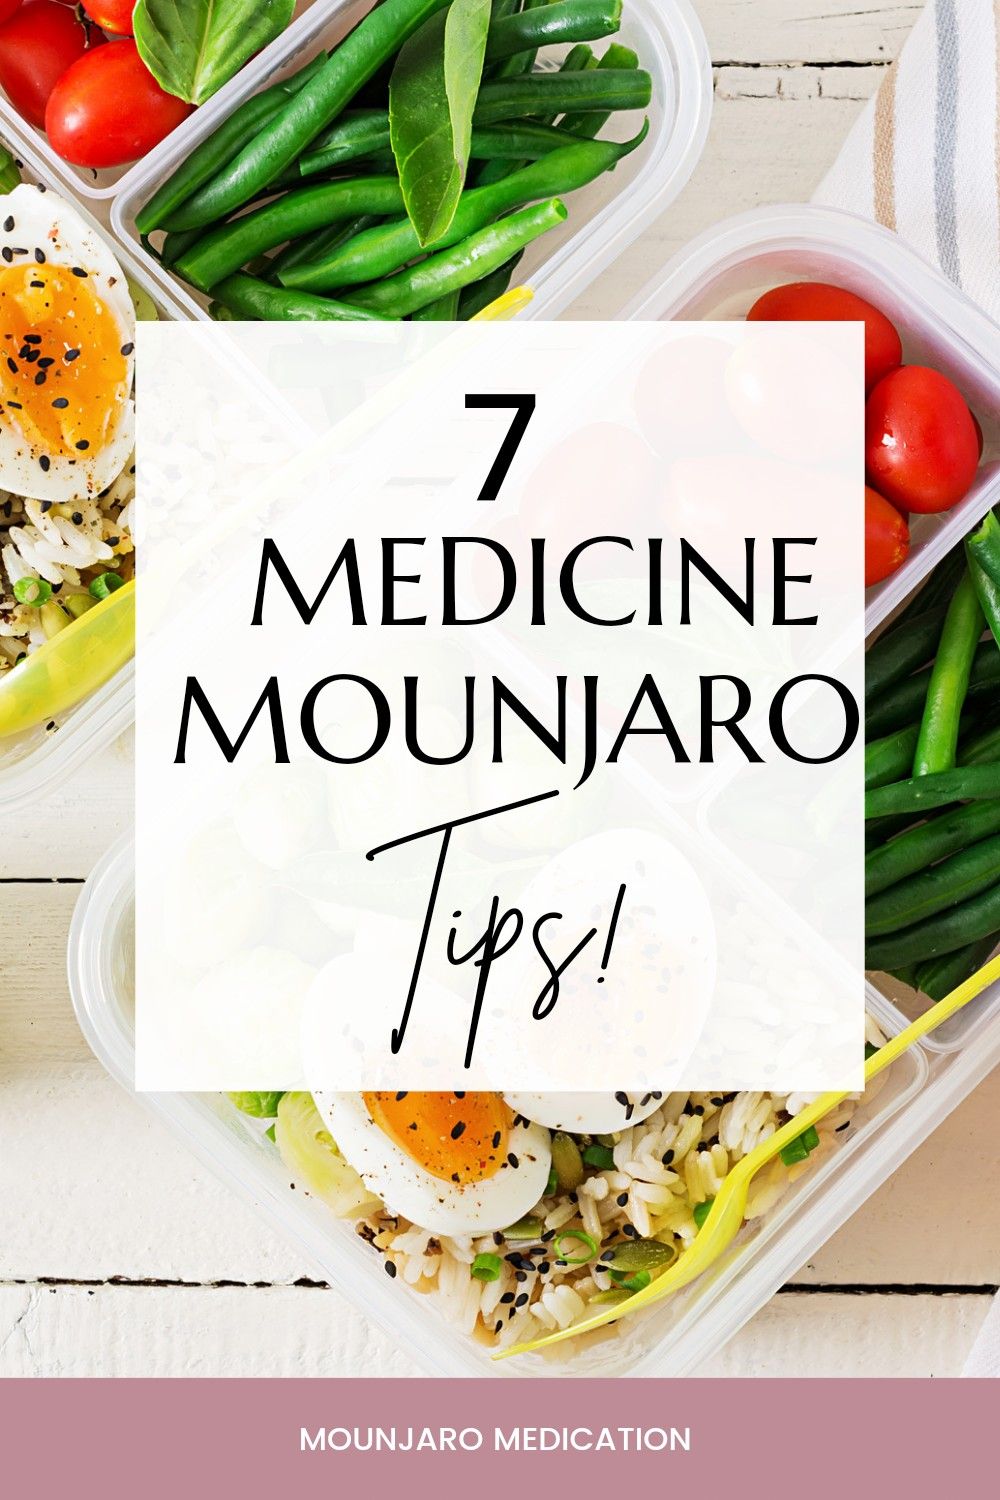 7 Mounjaro Medicine Tips | Mounjaro Medication | Mounjaro Meal Plan Tip | Mounja